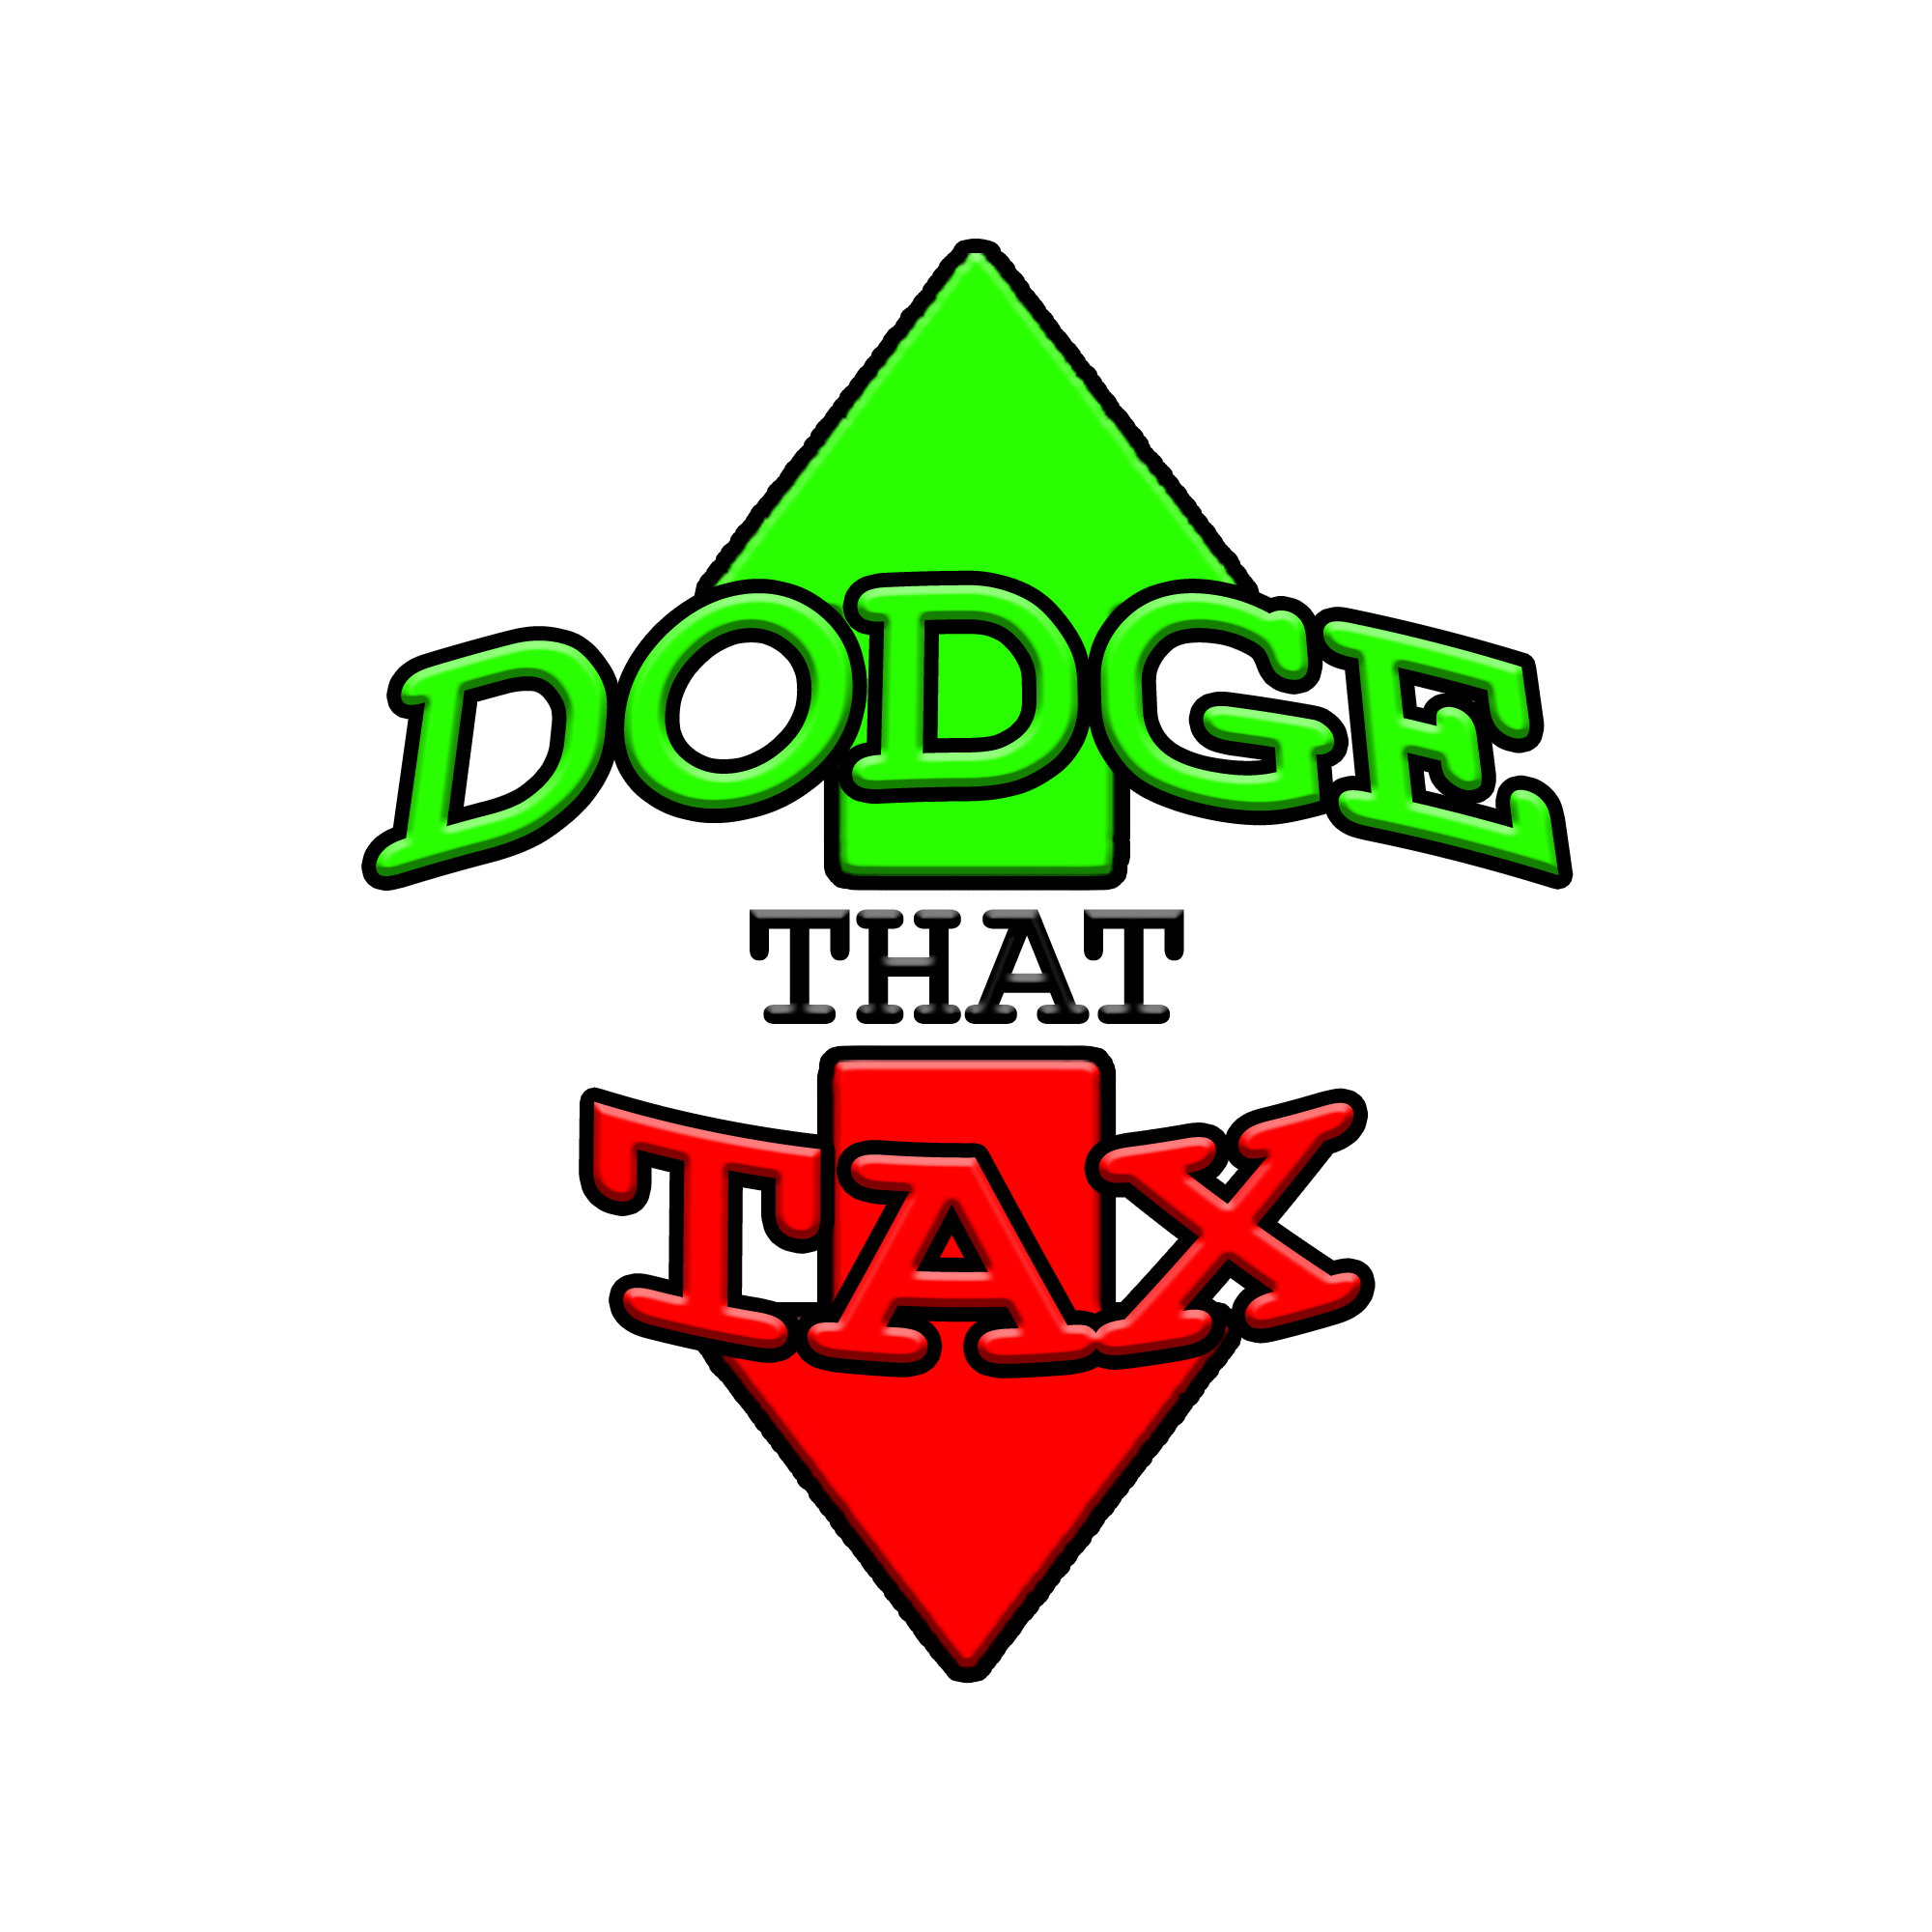 Dodge that tax